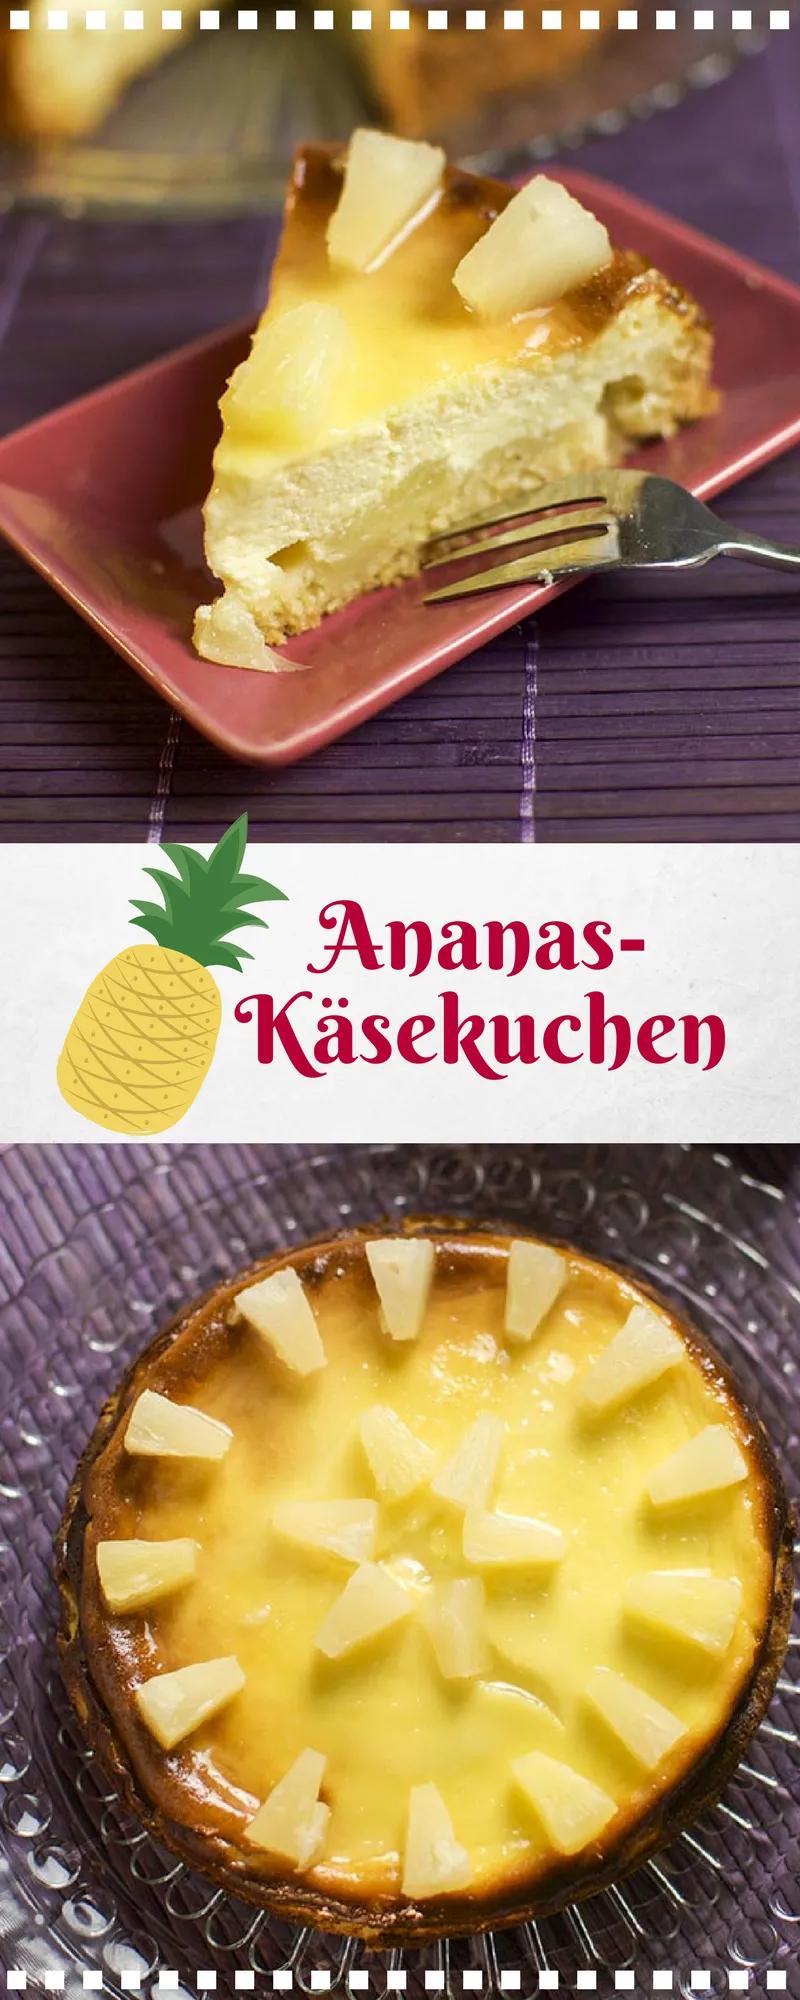 Ananas-Ingwer-Cheesecake - fruchtig würziger Käsekuchen - Rezept ...